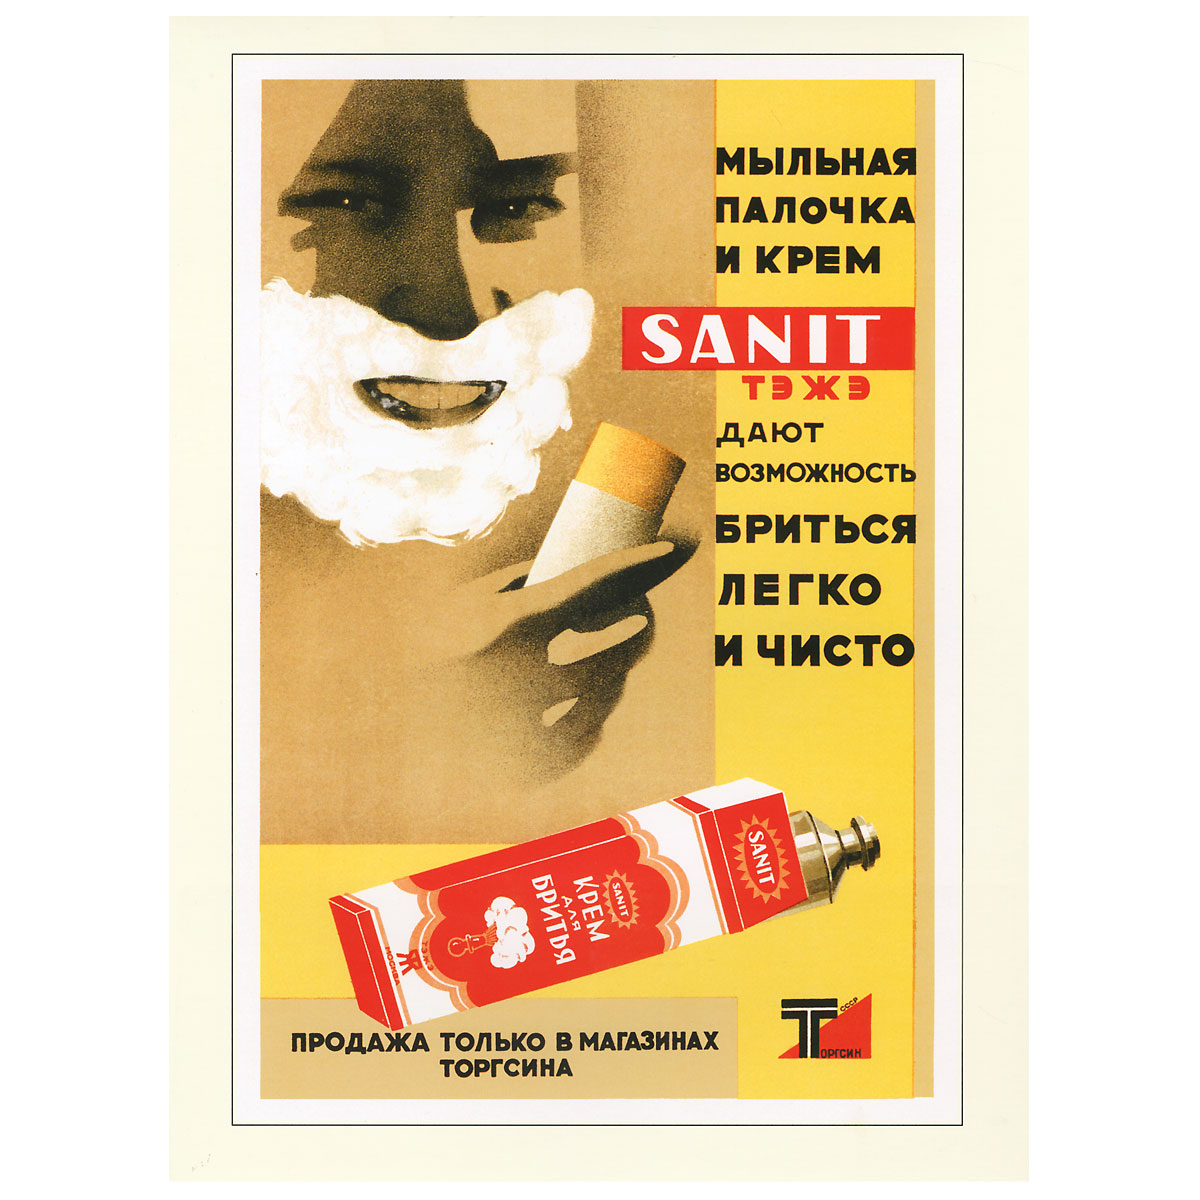 Советское - значит отличное! Советский рекламный плакат 1930-1960-х гг изменяется уверенно утверждая